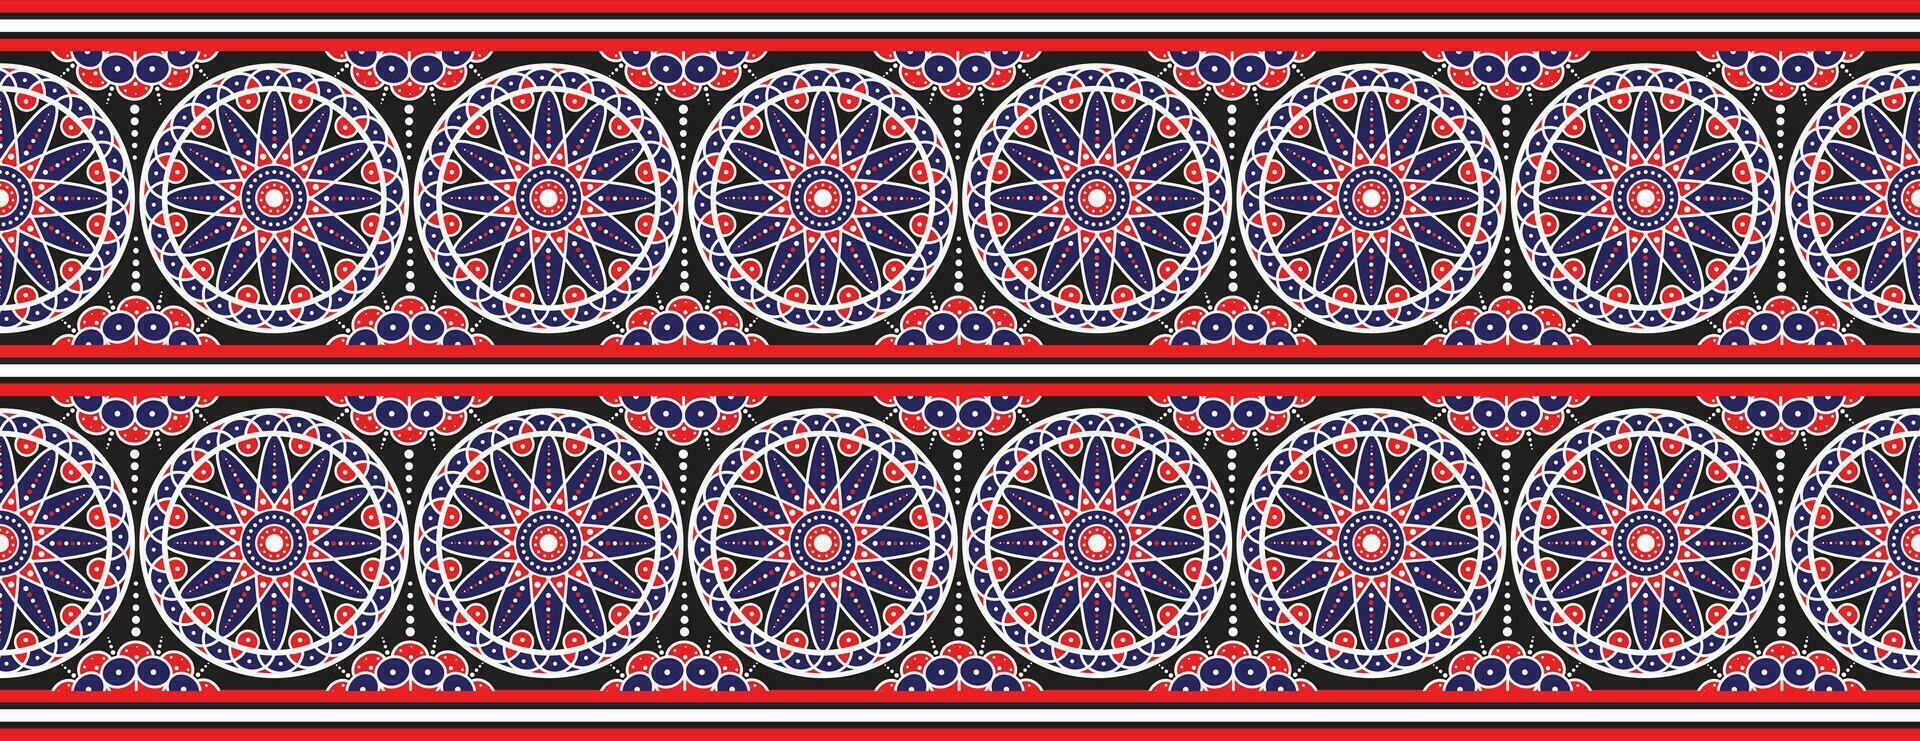 aztec etnisch patronen zijn traditioneel. meetkundig oosters naadloos patroon. grens decoratie. ontwerp voor achtergrond, behang, vector illustratie, textiel, tapijt, kleding stof, kleding, en borduurwerk.